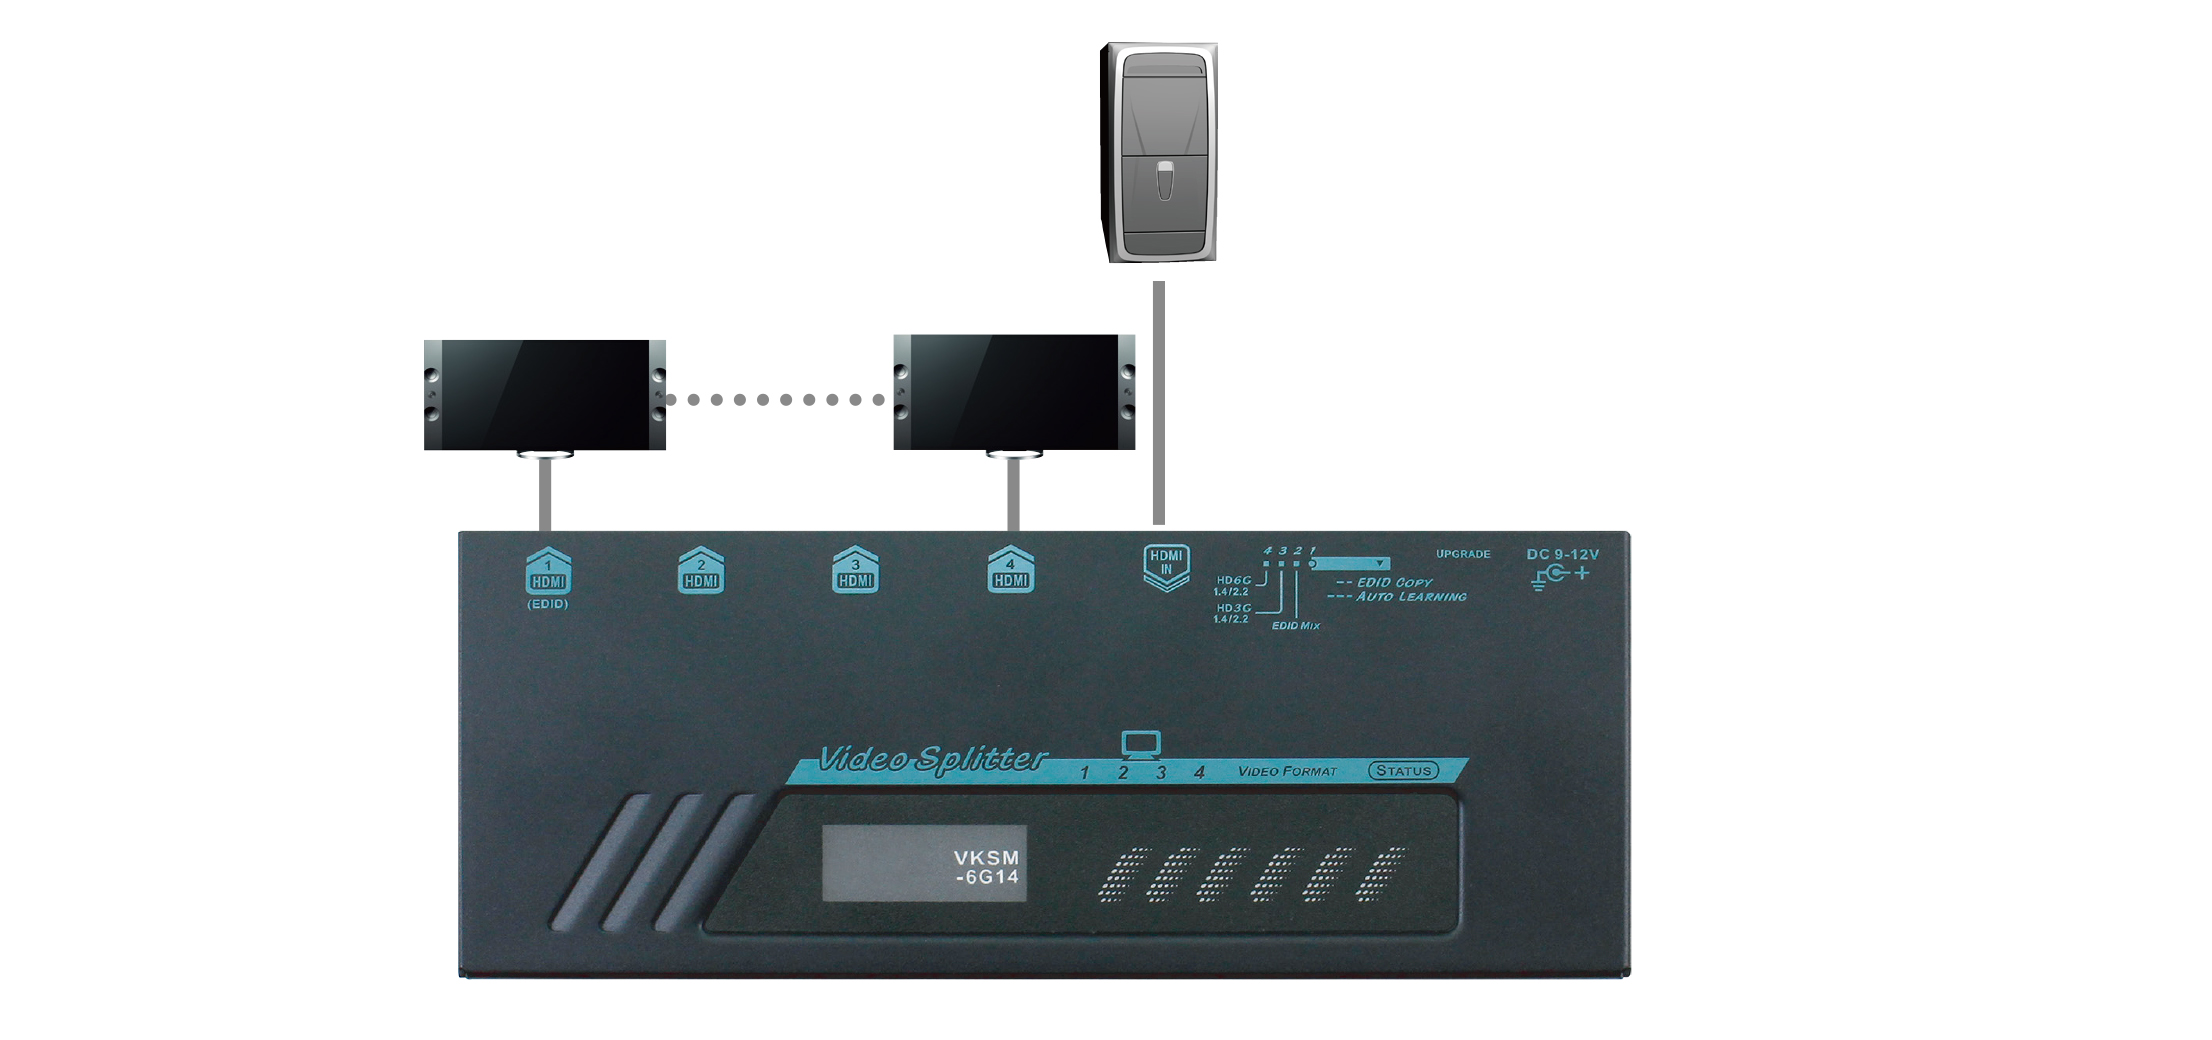 4 Ports True 4K HDMI Video Splitter